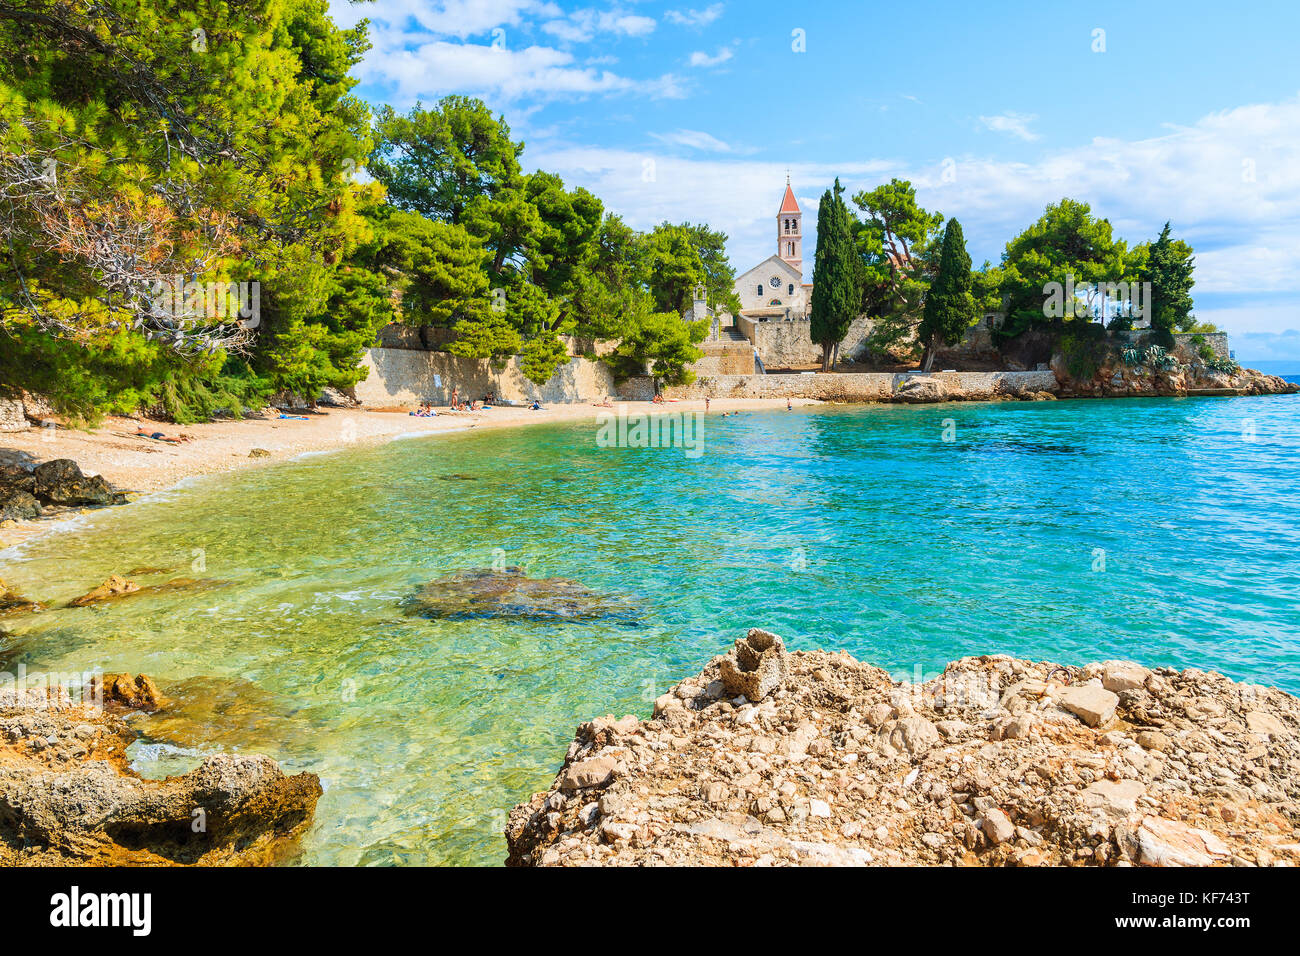 Strand mit smaragdgrünen Meer Wasser und Blick auf die Dominikanische Kloster in Abstand, Bol, Insel Brac, Kroatien Stockfoto